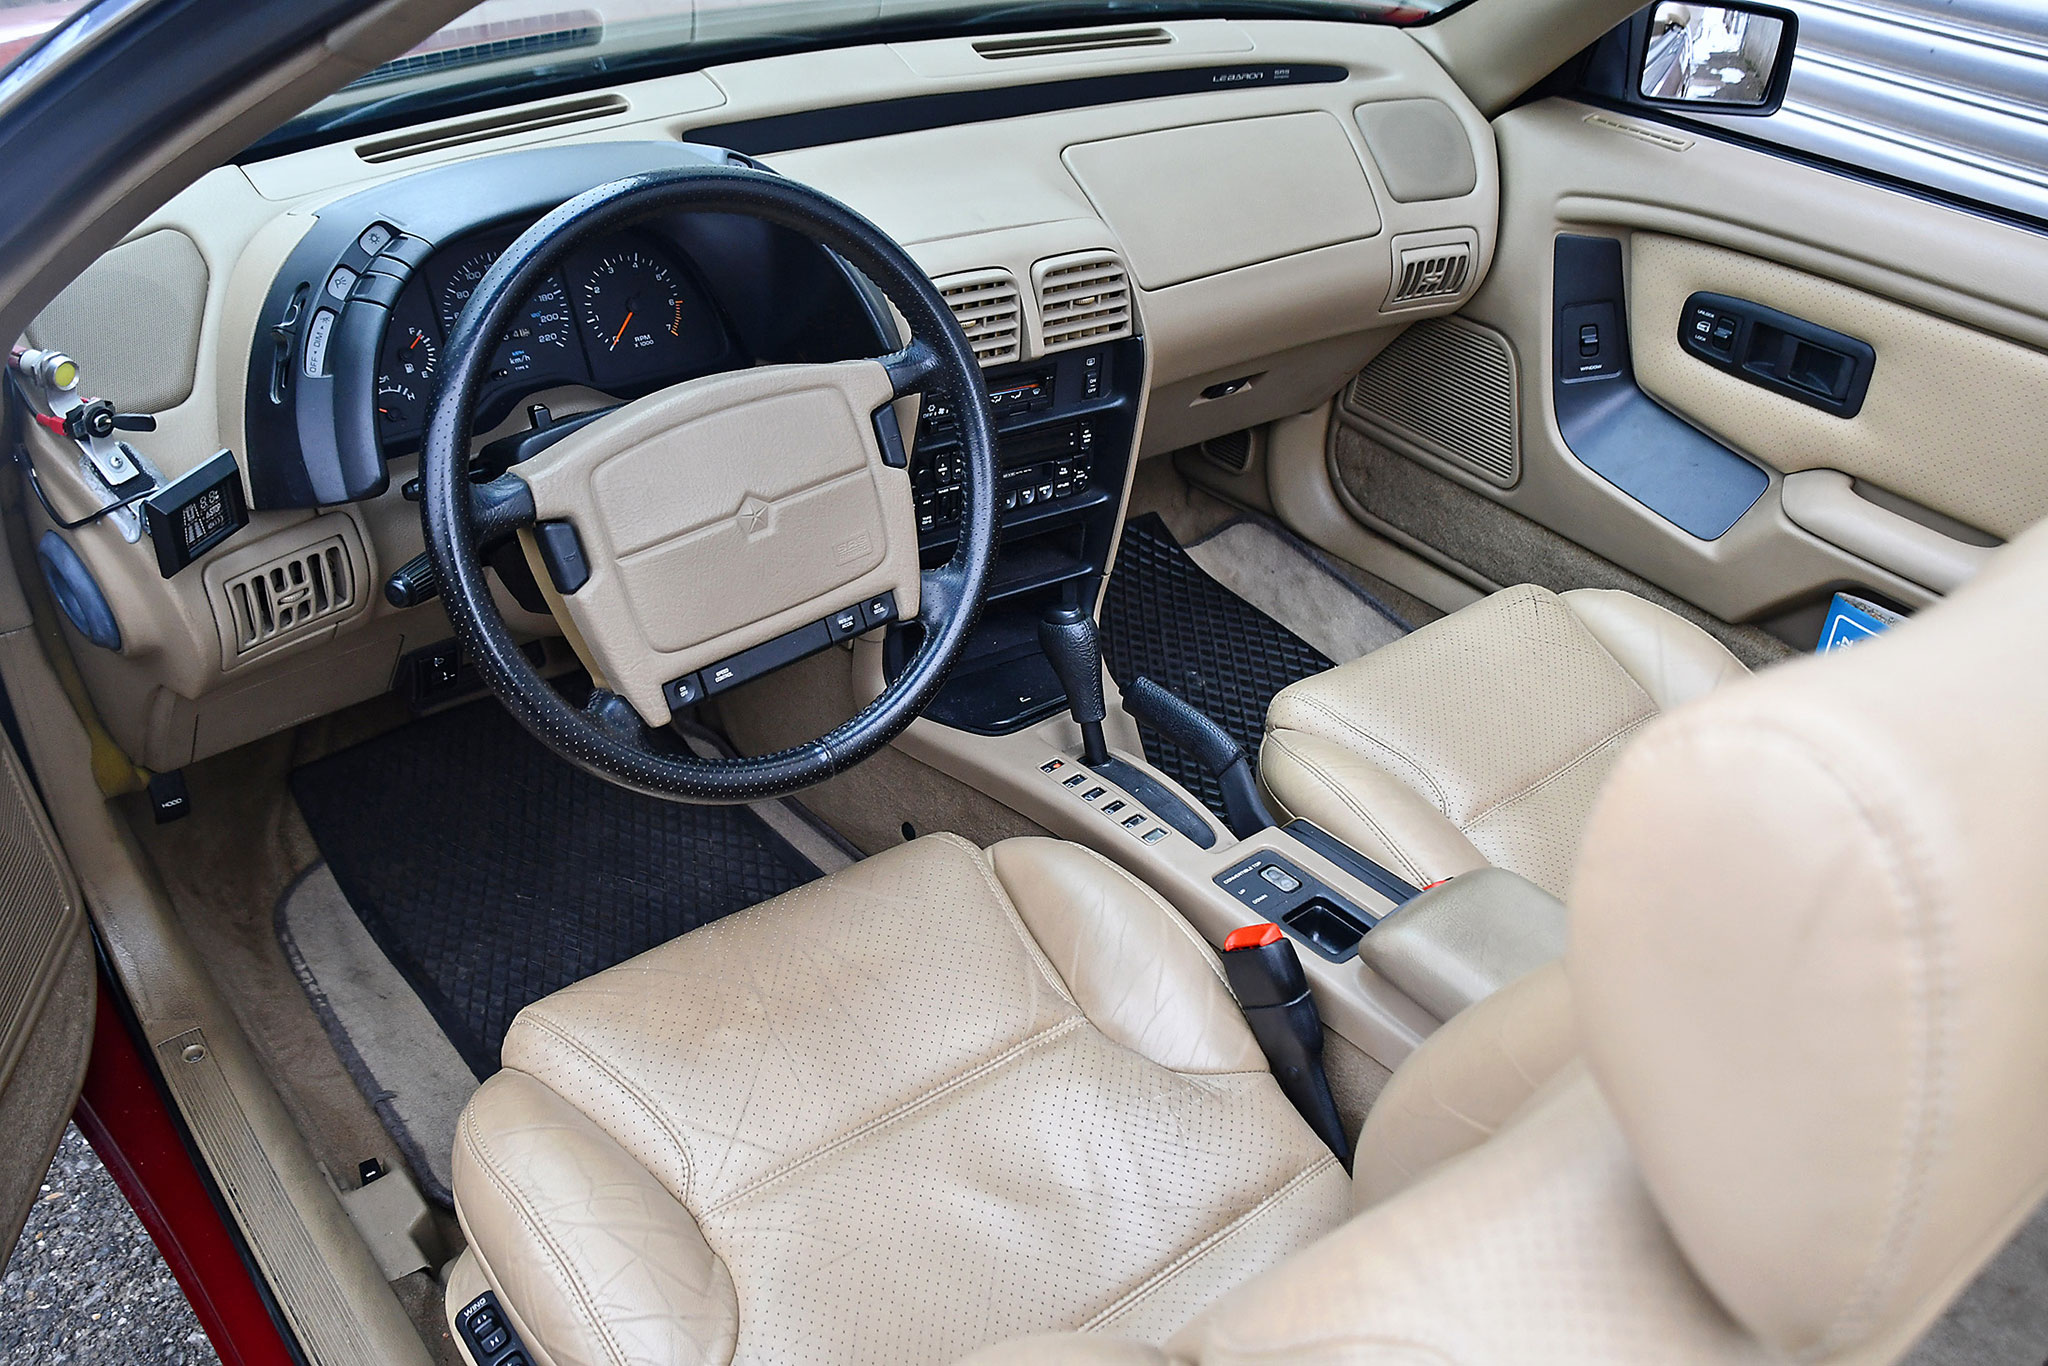 1994 Chrysler LeBaron 3.0 V6 LX – intérieur accueillant pour 4 personnes et boîte automatique à 4 rapports.